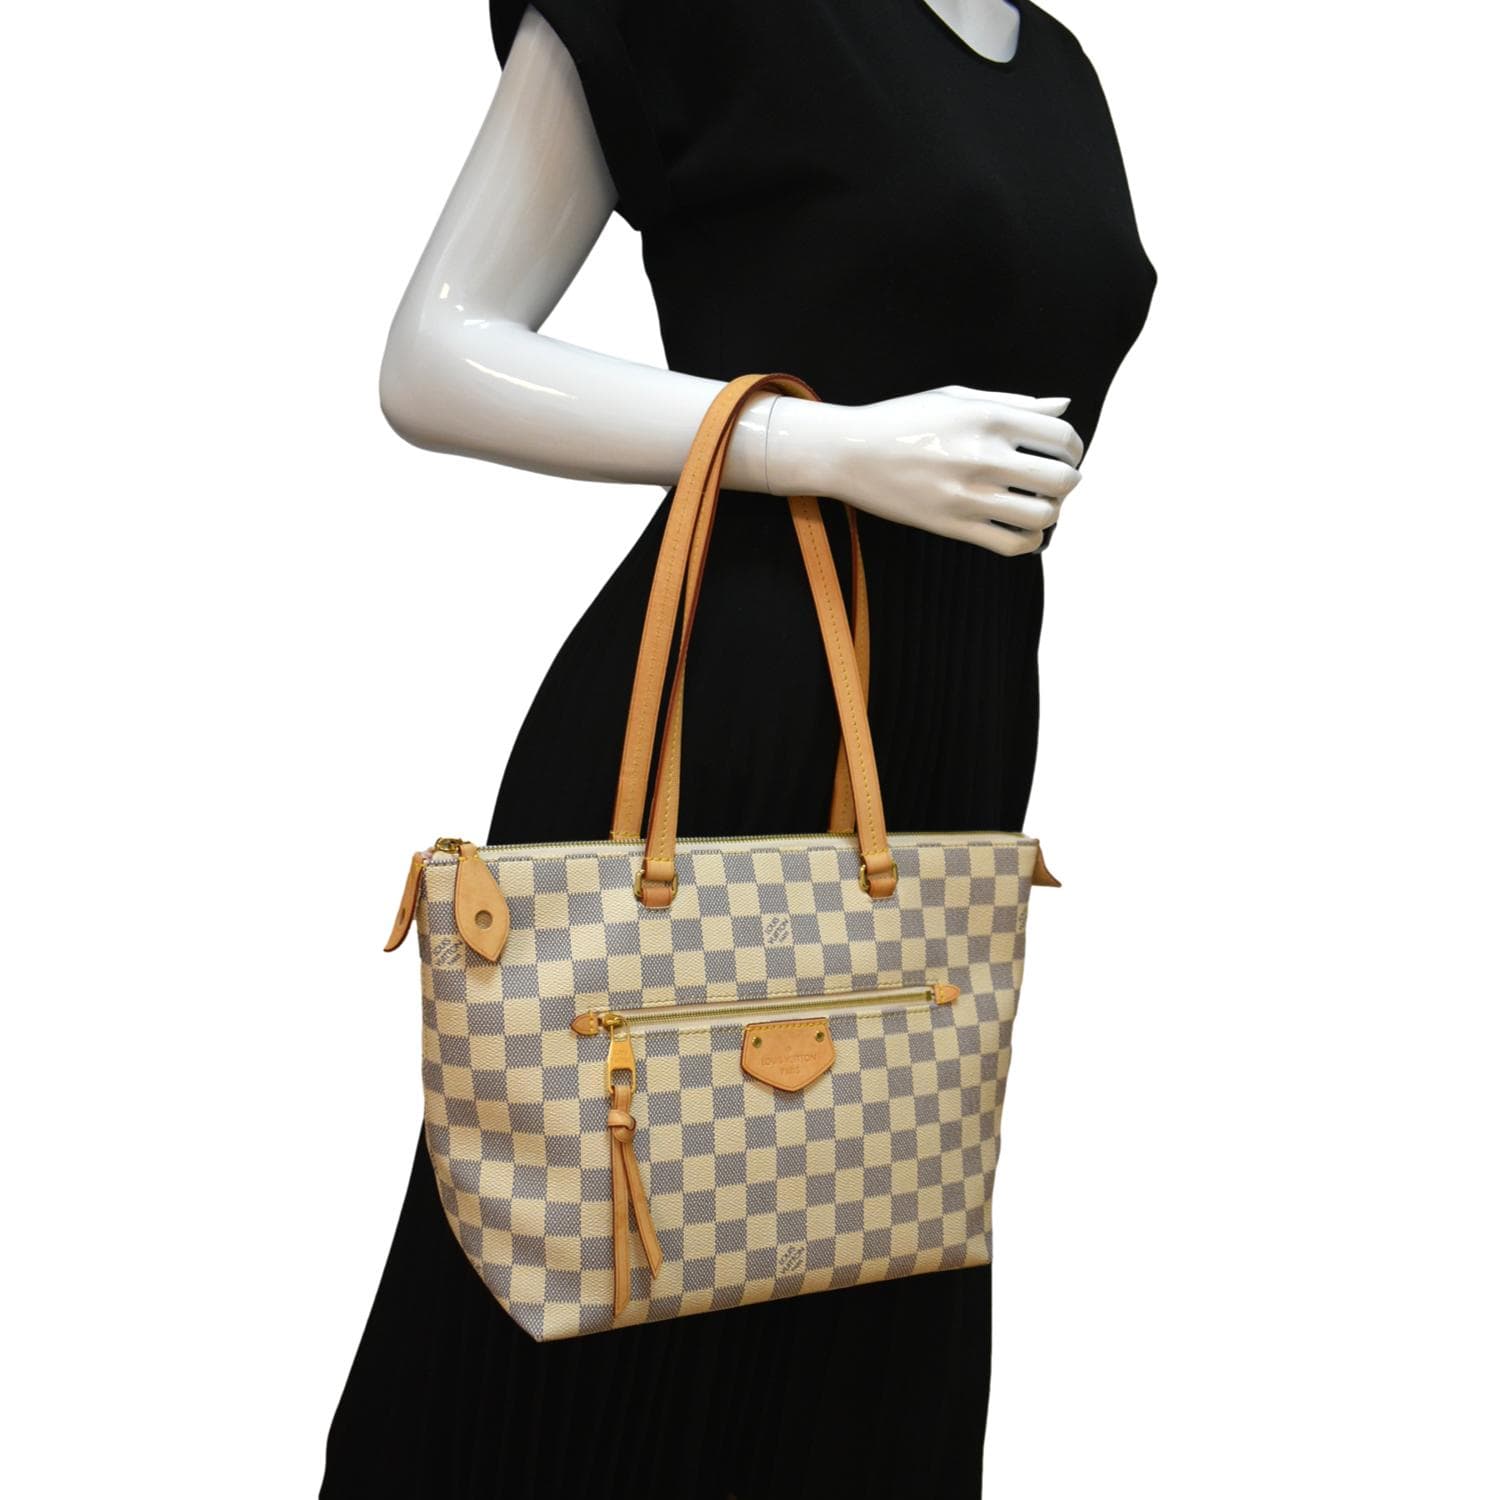 Louis Vuitton, Bags, Authentic Louis Vuitton Iena Pm